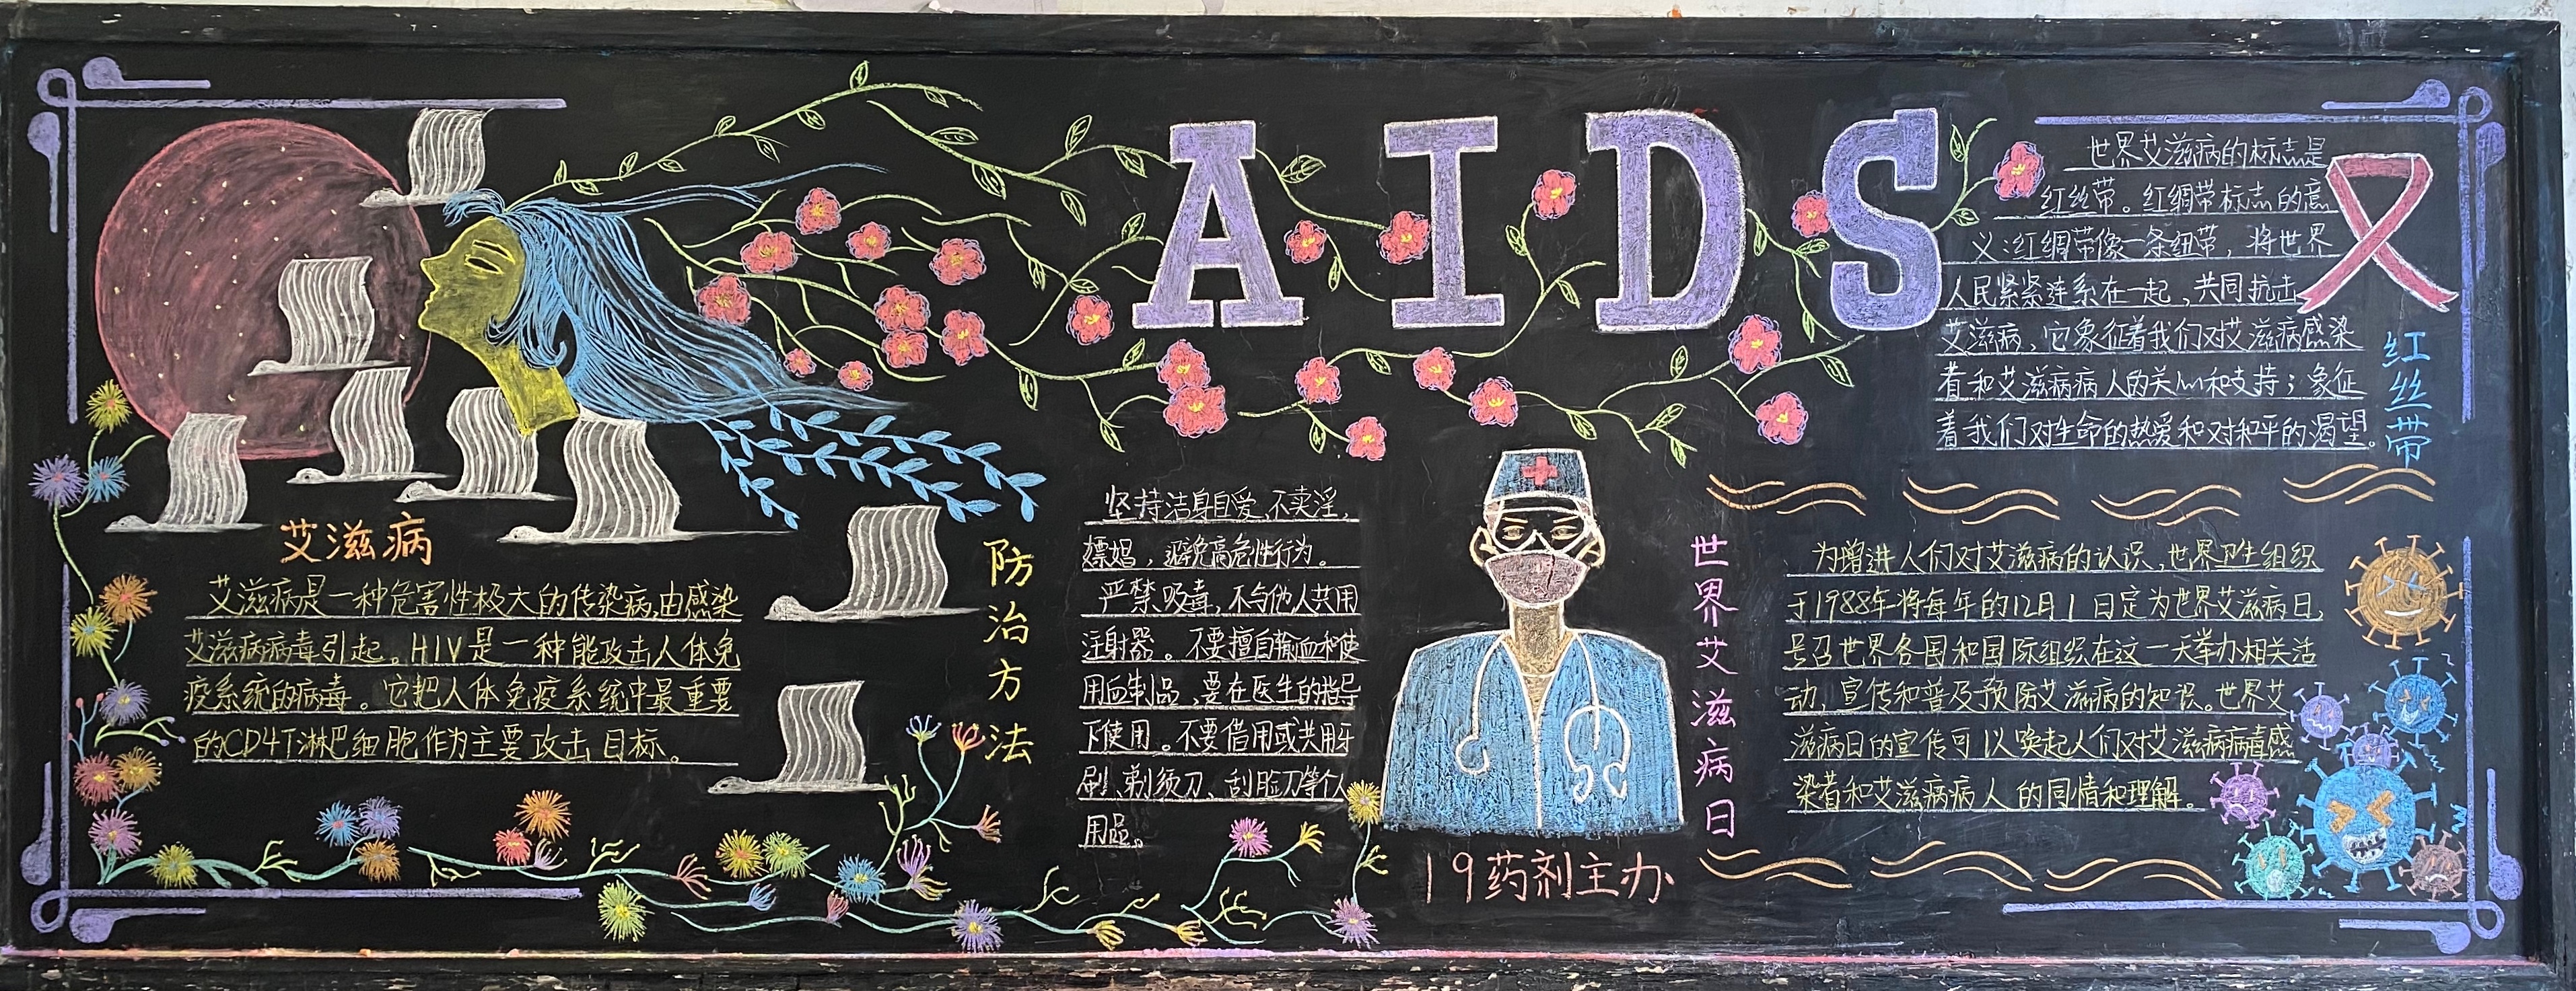 AIDS艾滋病黑板报图片